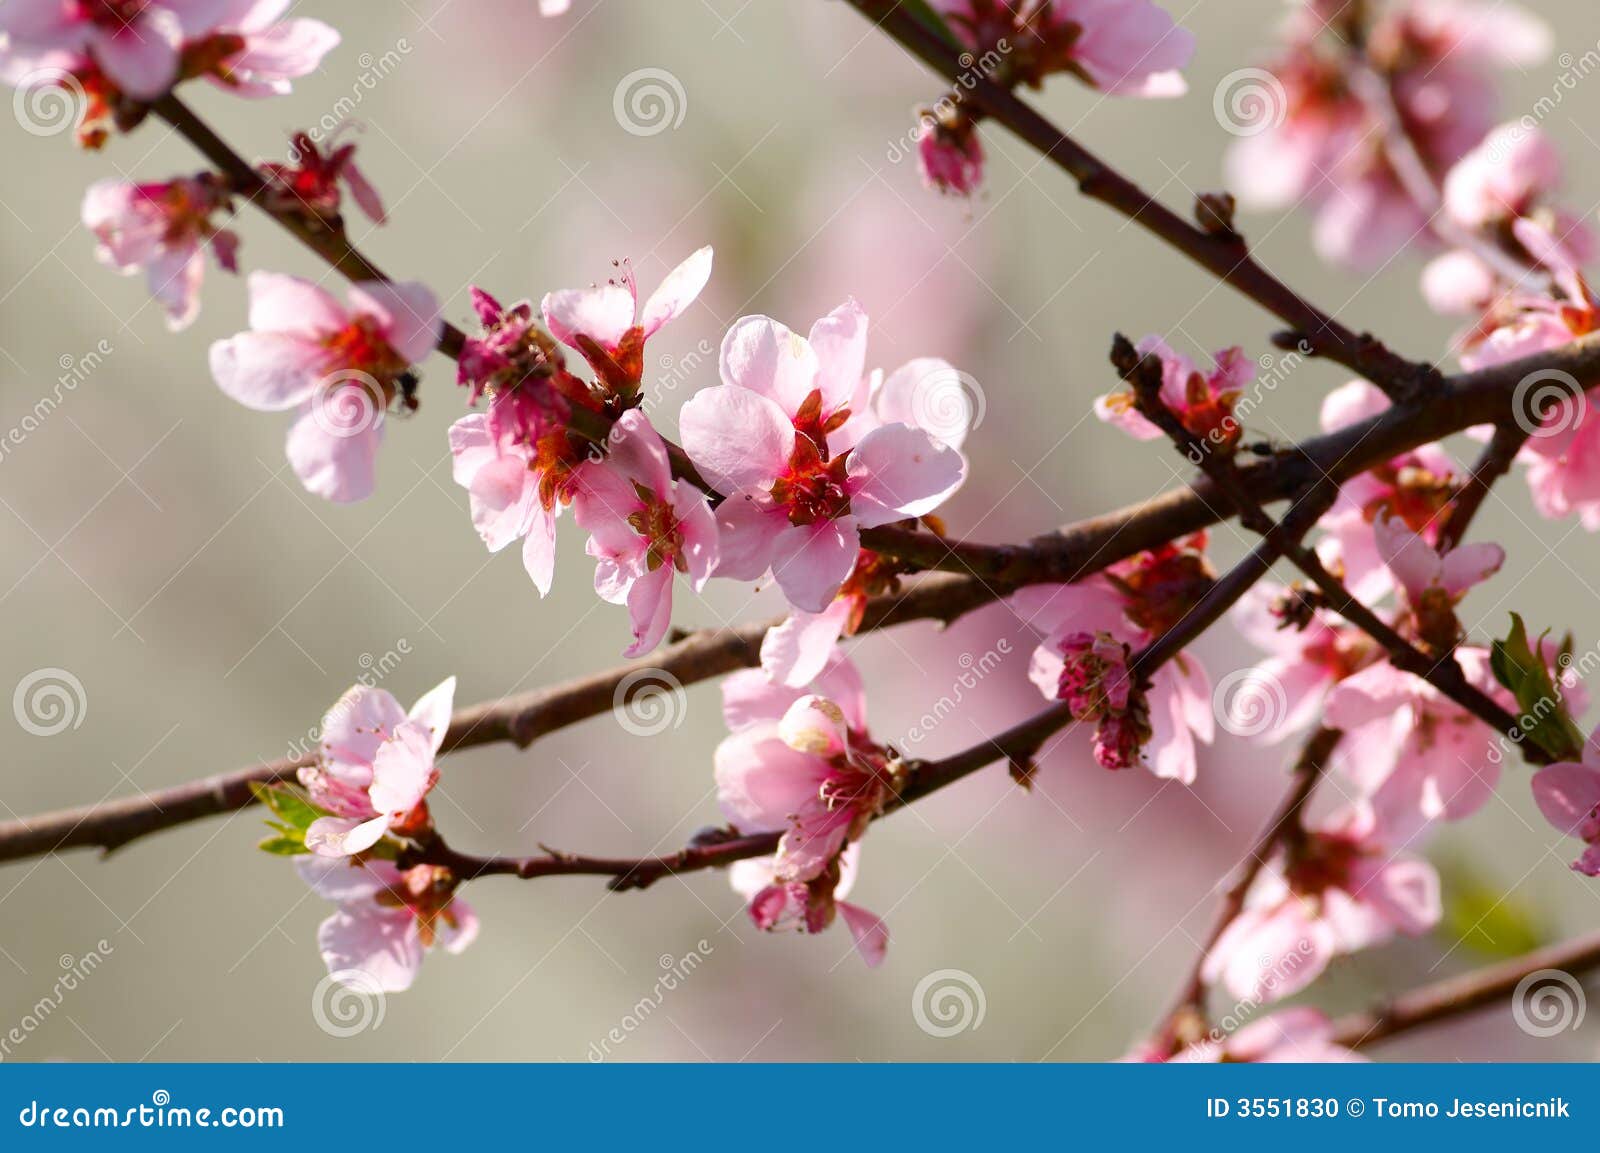 Flor del cerezo foto de archivo. Imagen de colorido, apacible - 3551830